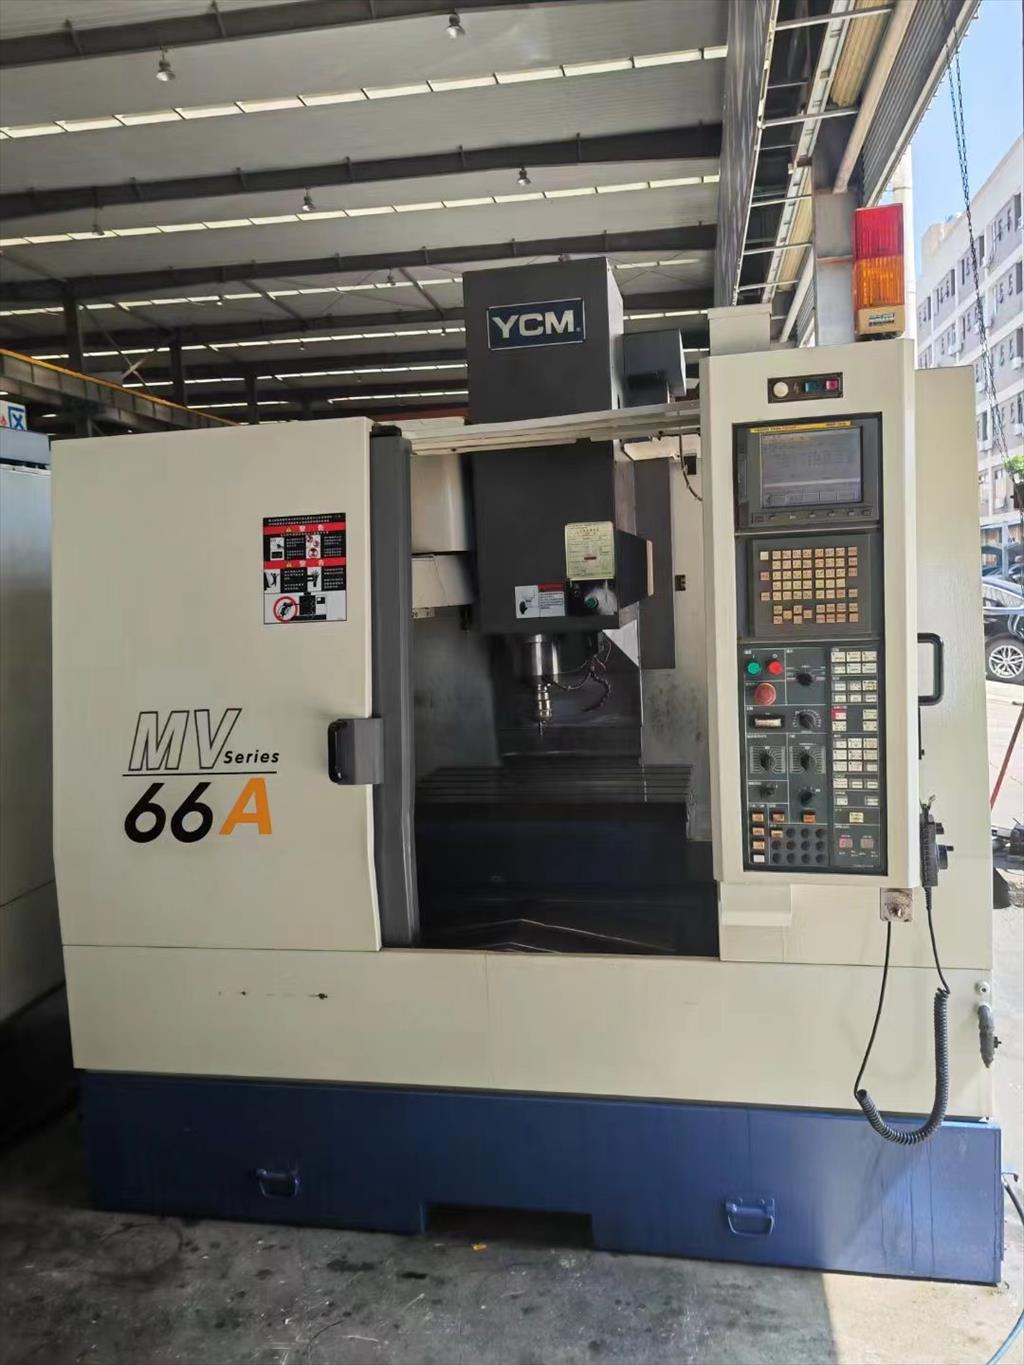 دستگاه فرز سی ان سی(فرزcnc)ycm mv66a<br/>مدل  mv66a<br/>کشور سازنده:تایوان<br/>bt40 <br/>اسپیندل8000<br/>x/760<br/>y/510<br/>z/560<br/><br/><br/>لیست ماشین آلات فرز موجود در شرکت فراز صنعت ق industry industrial-machinery industrial-machinery